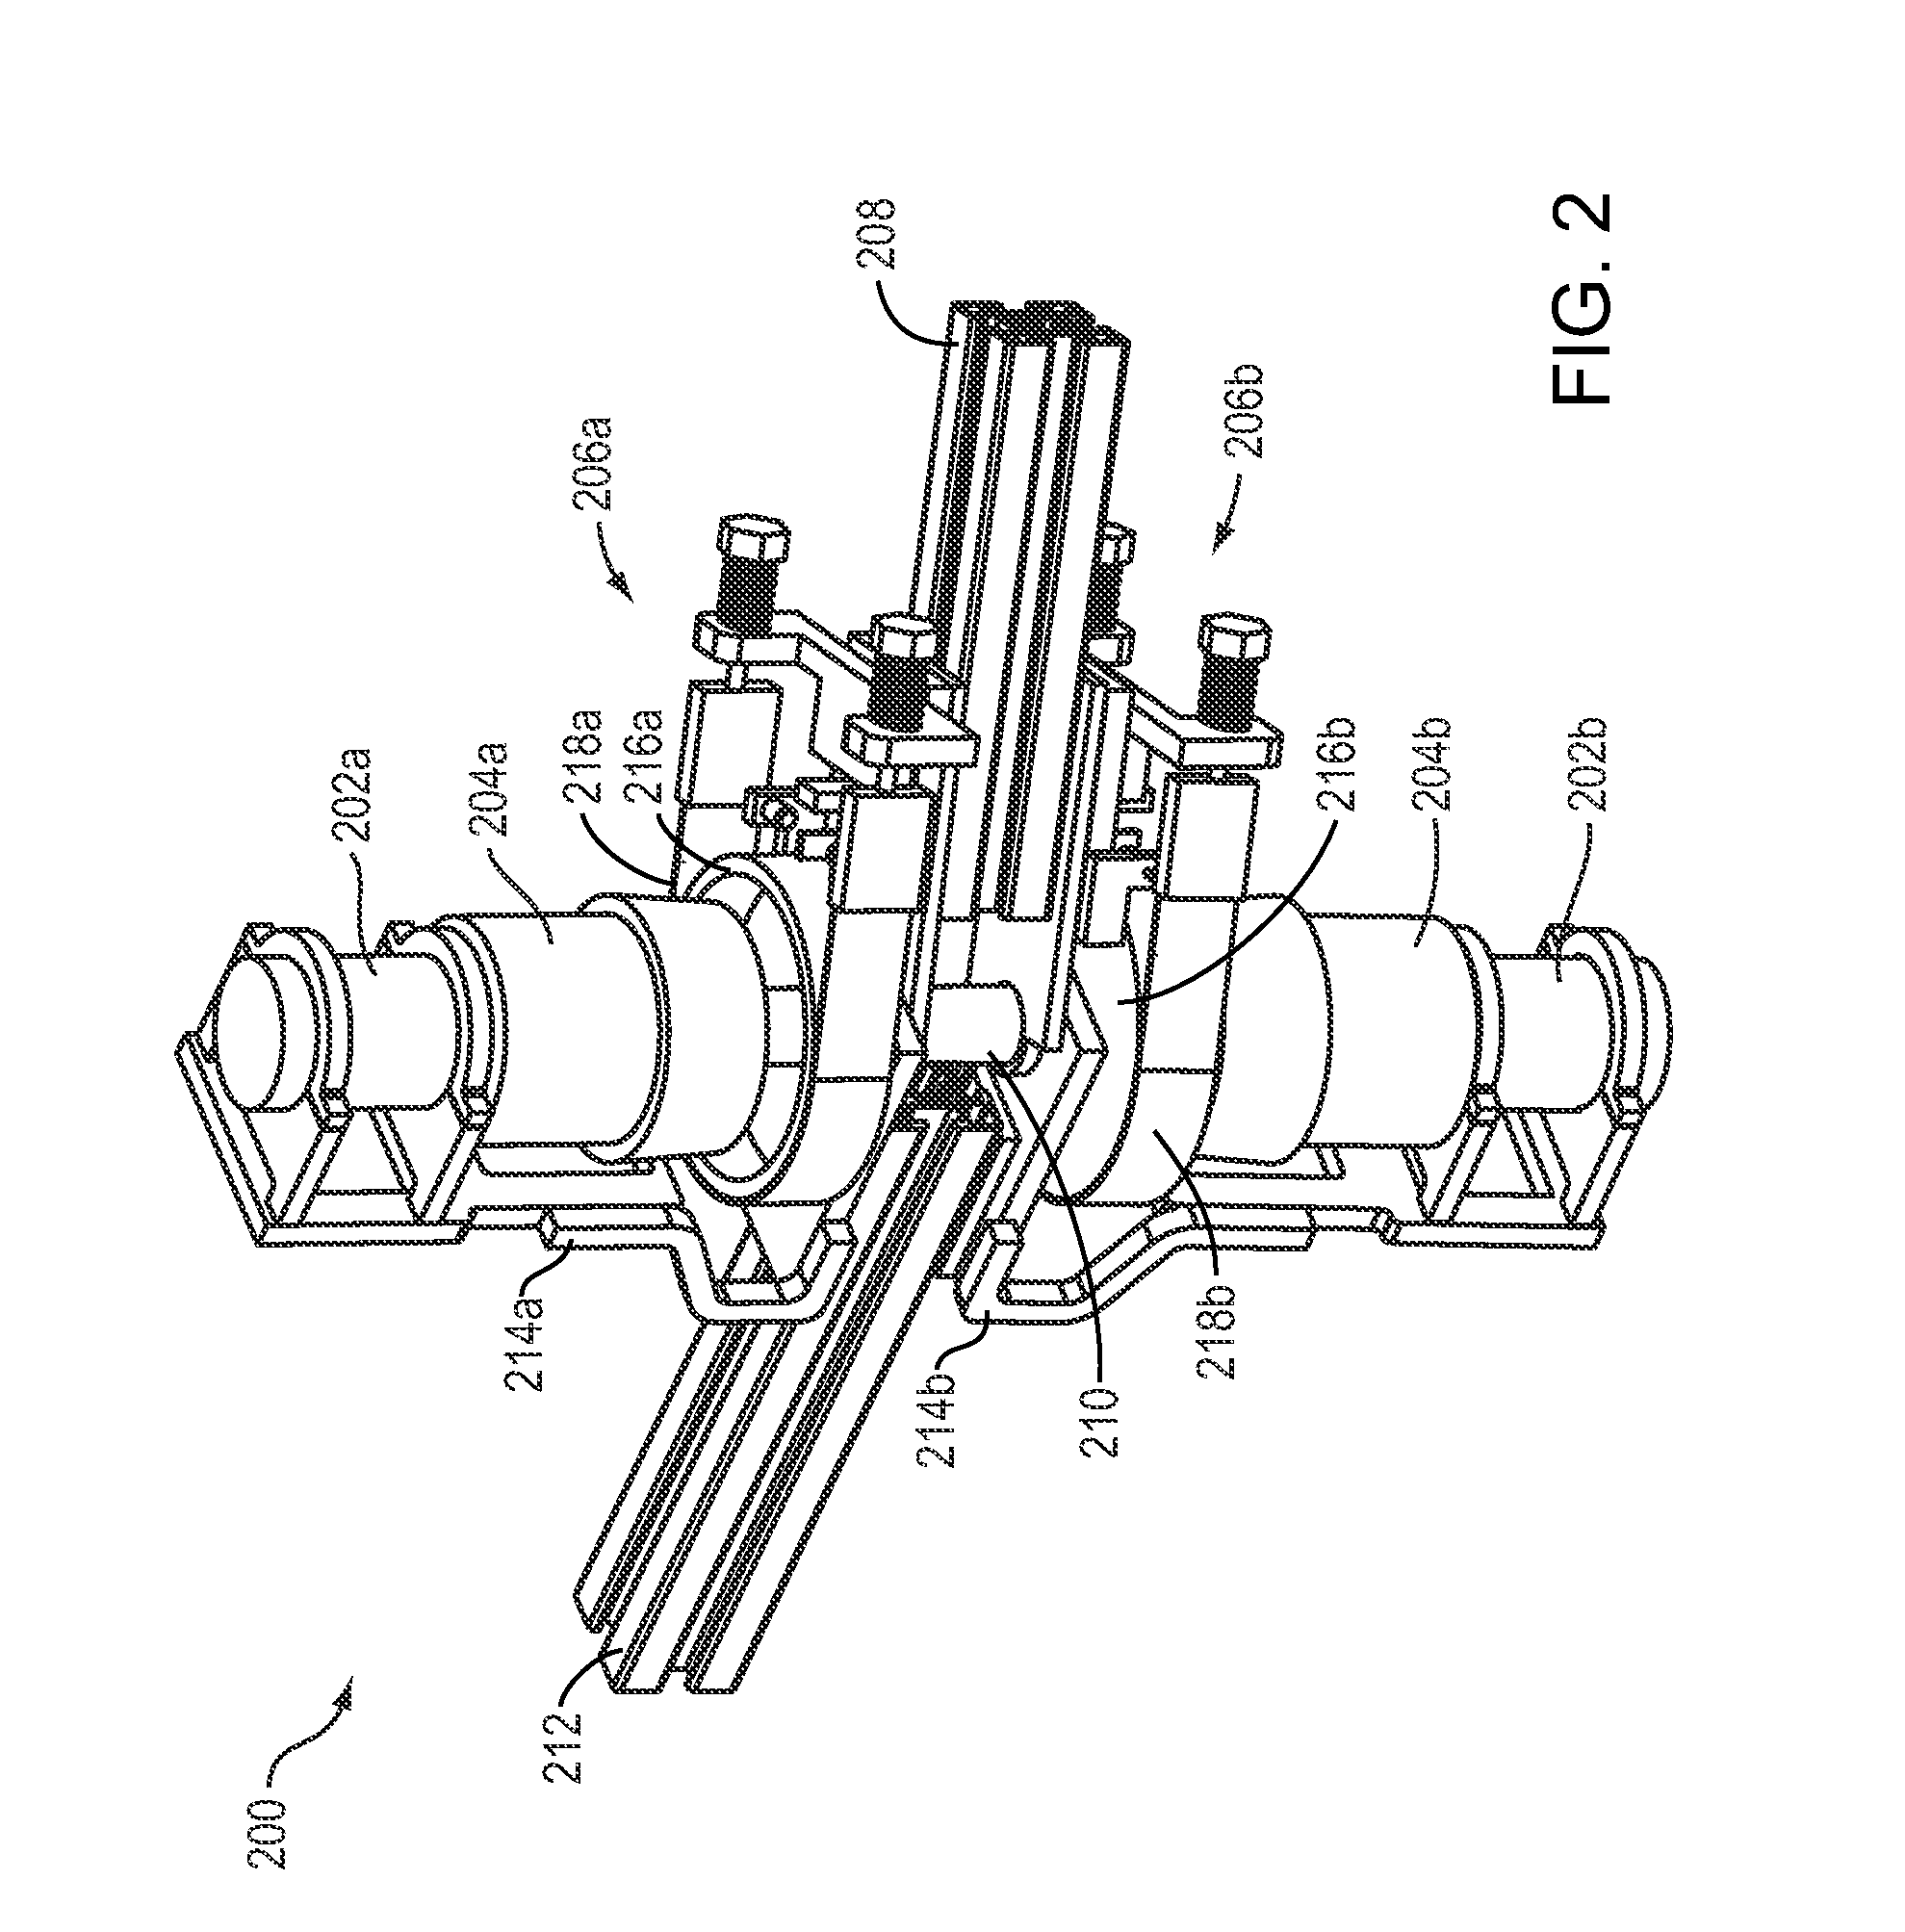 Dual-motor series elastic actuator